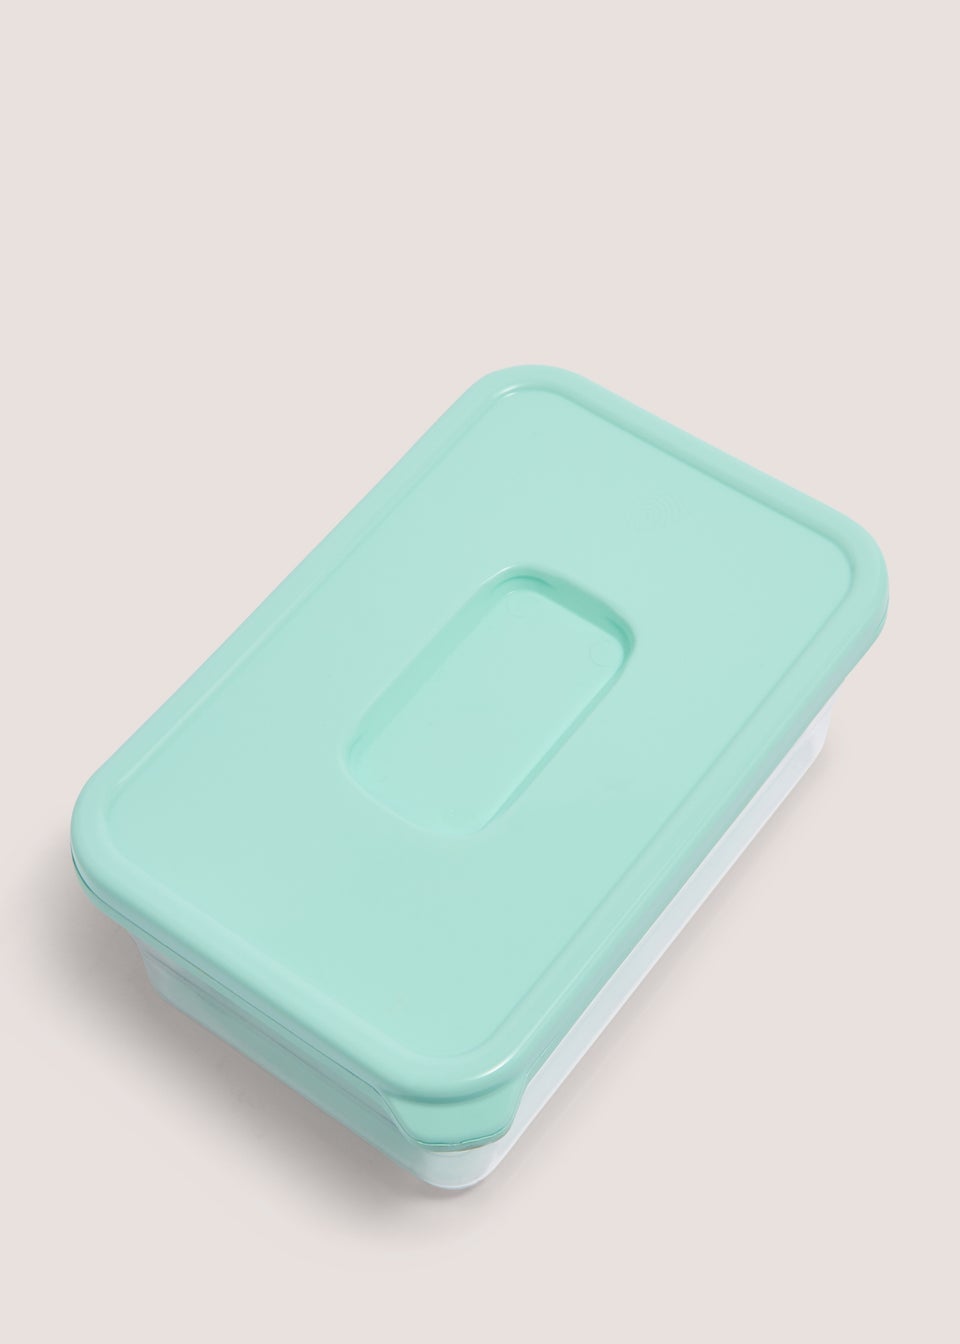 Aqua Single Lunch Box (18cmx12cmx8cm)